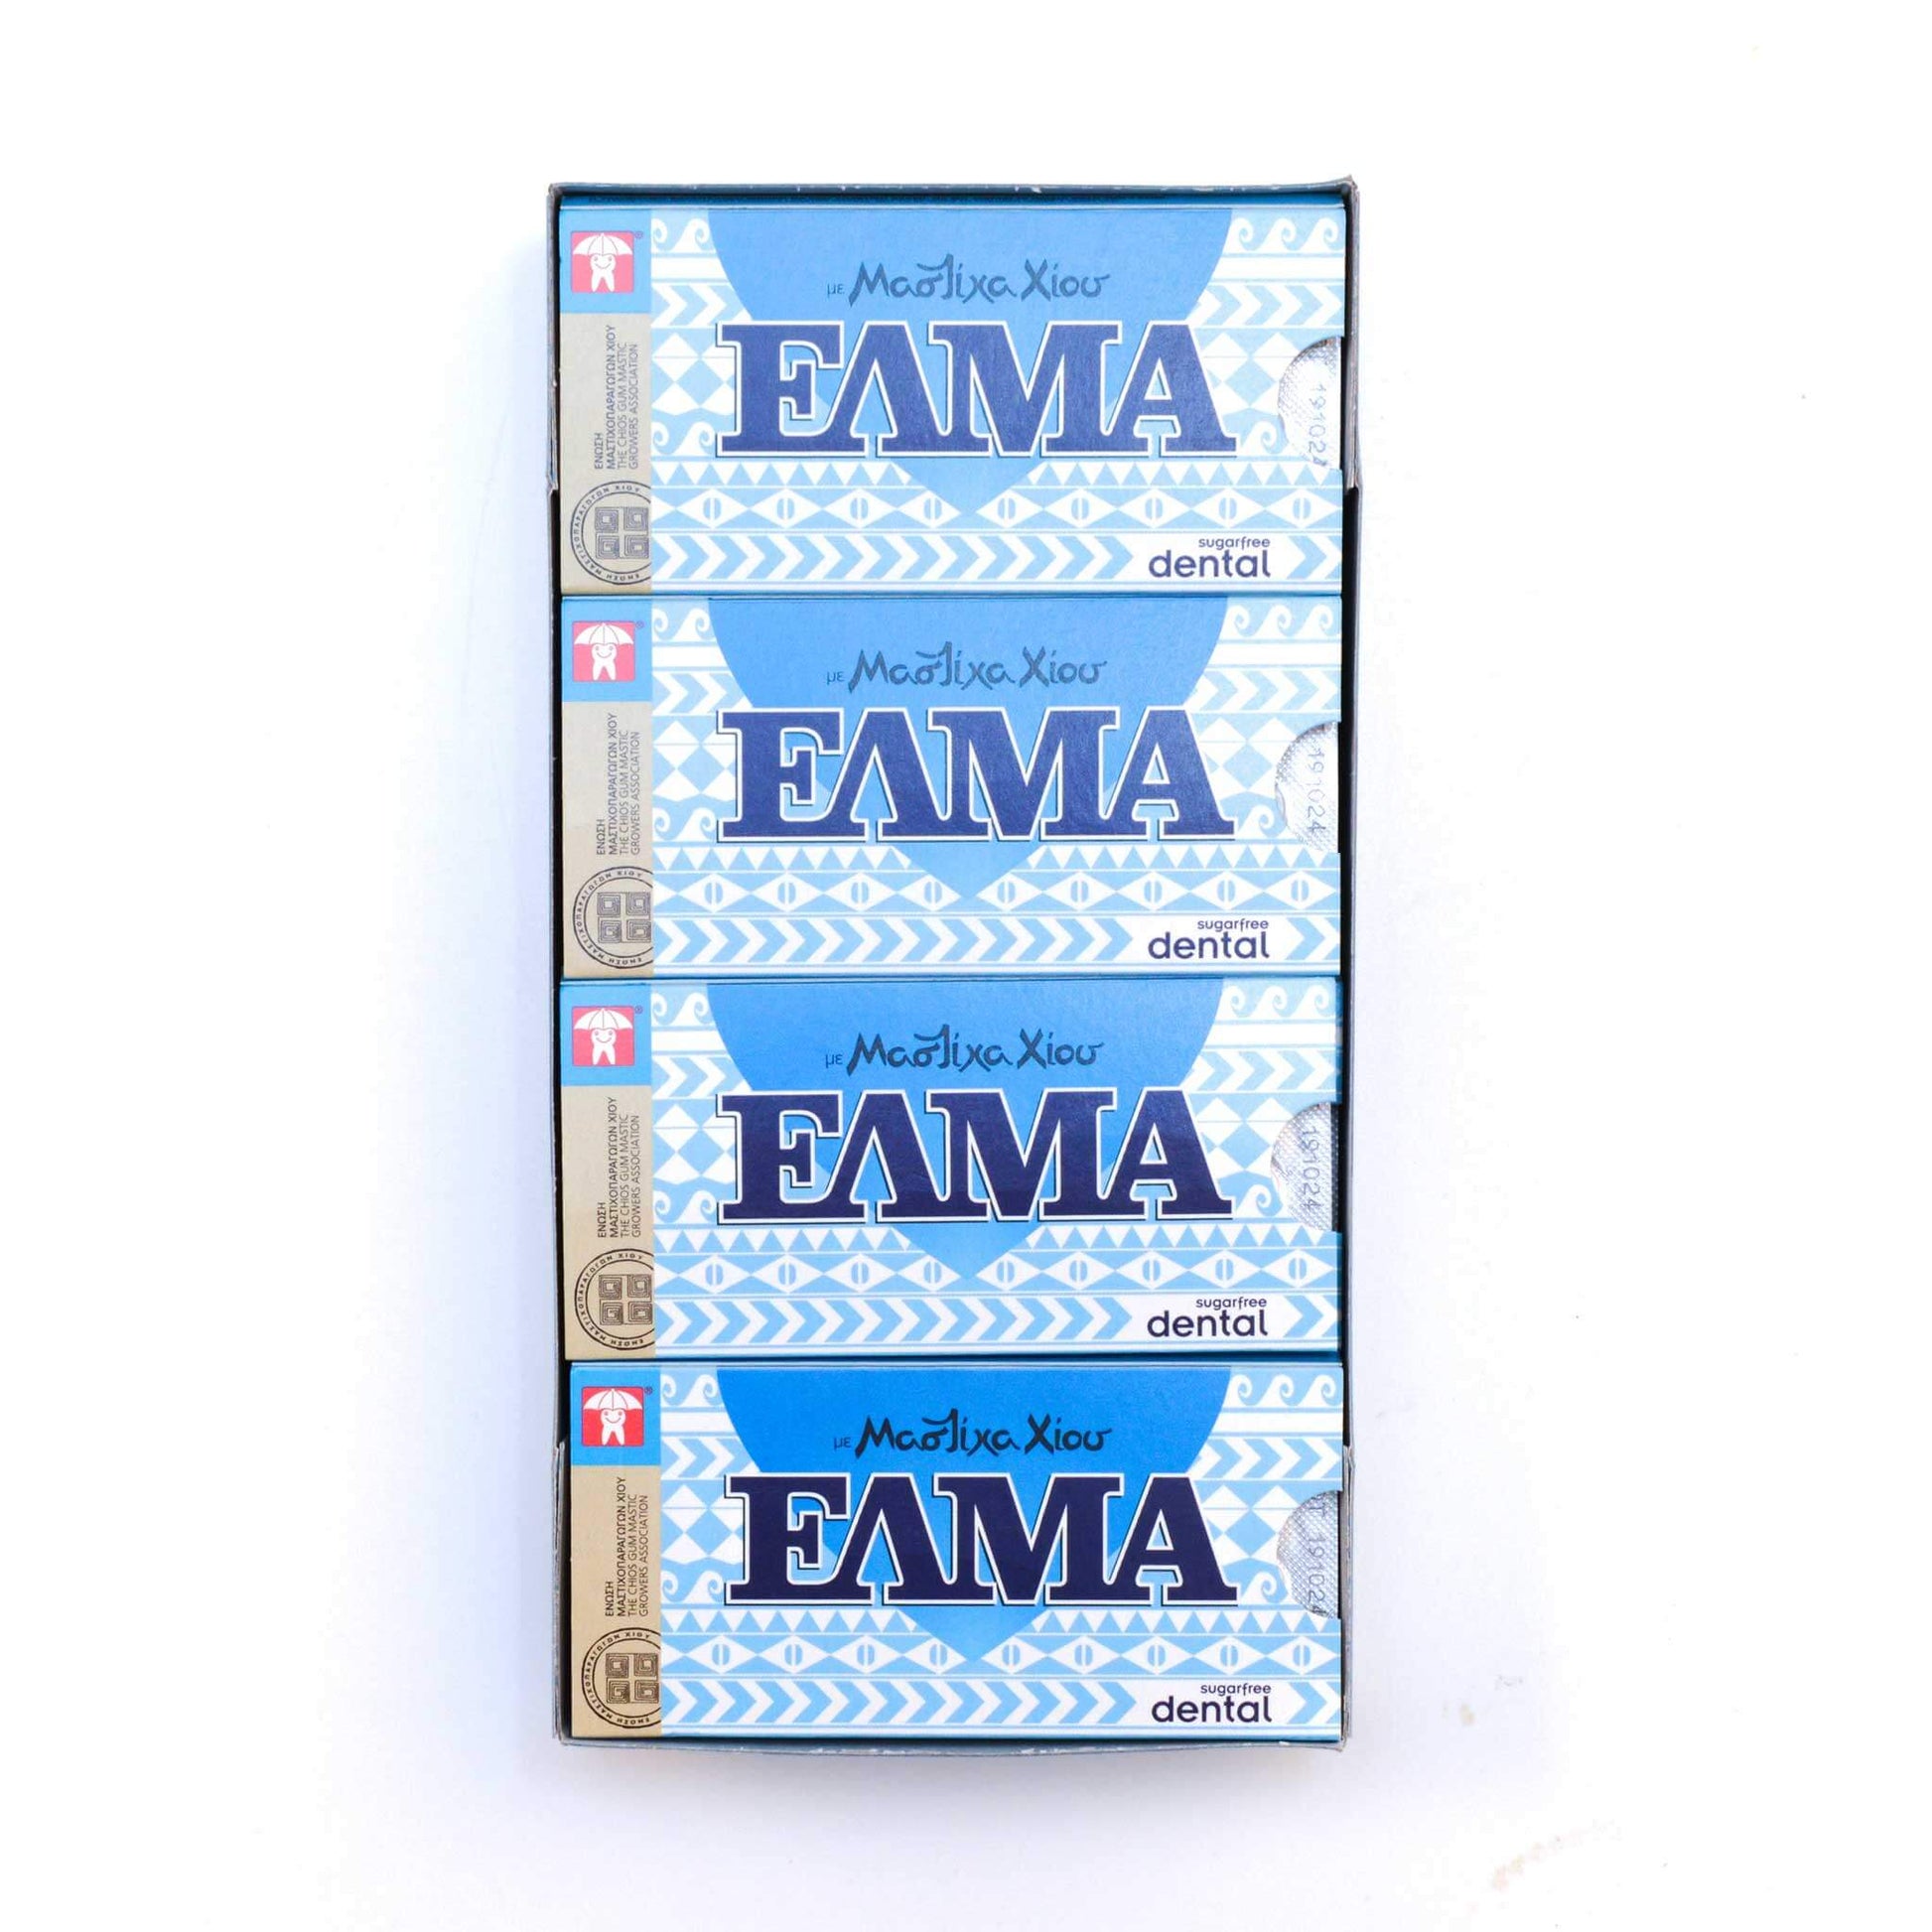 ELMA Dental: mit Mastix, ohne Zucker (Box)